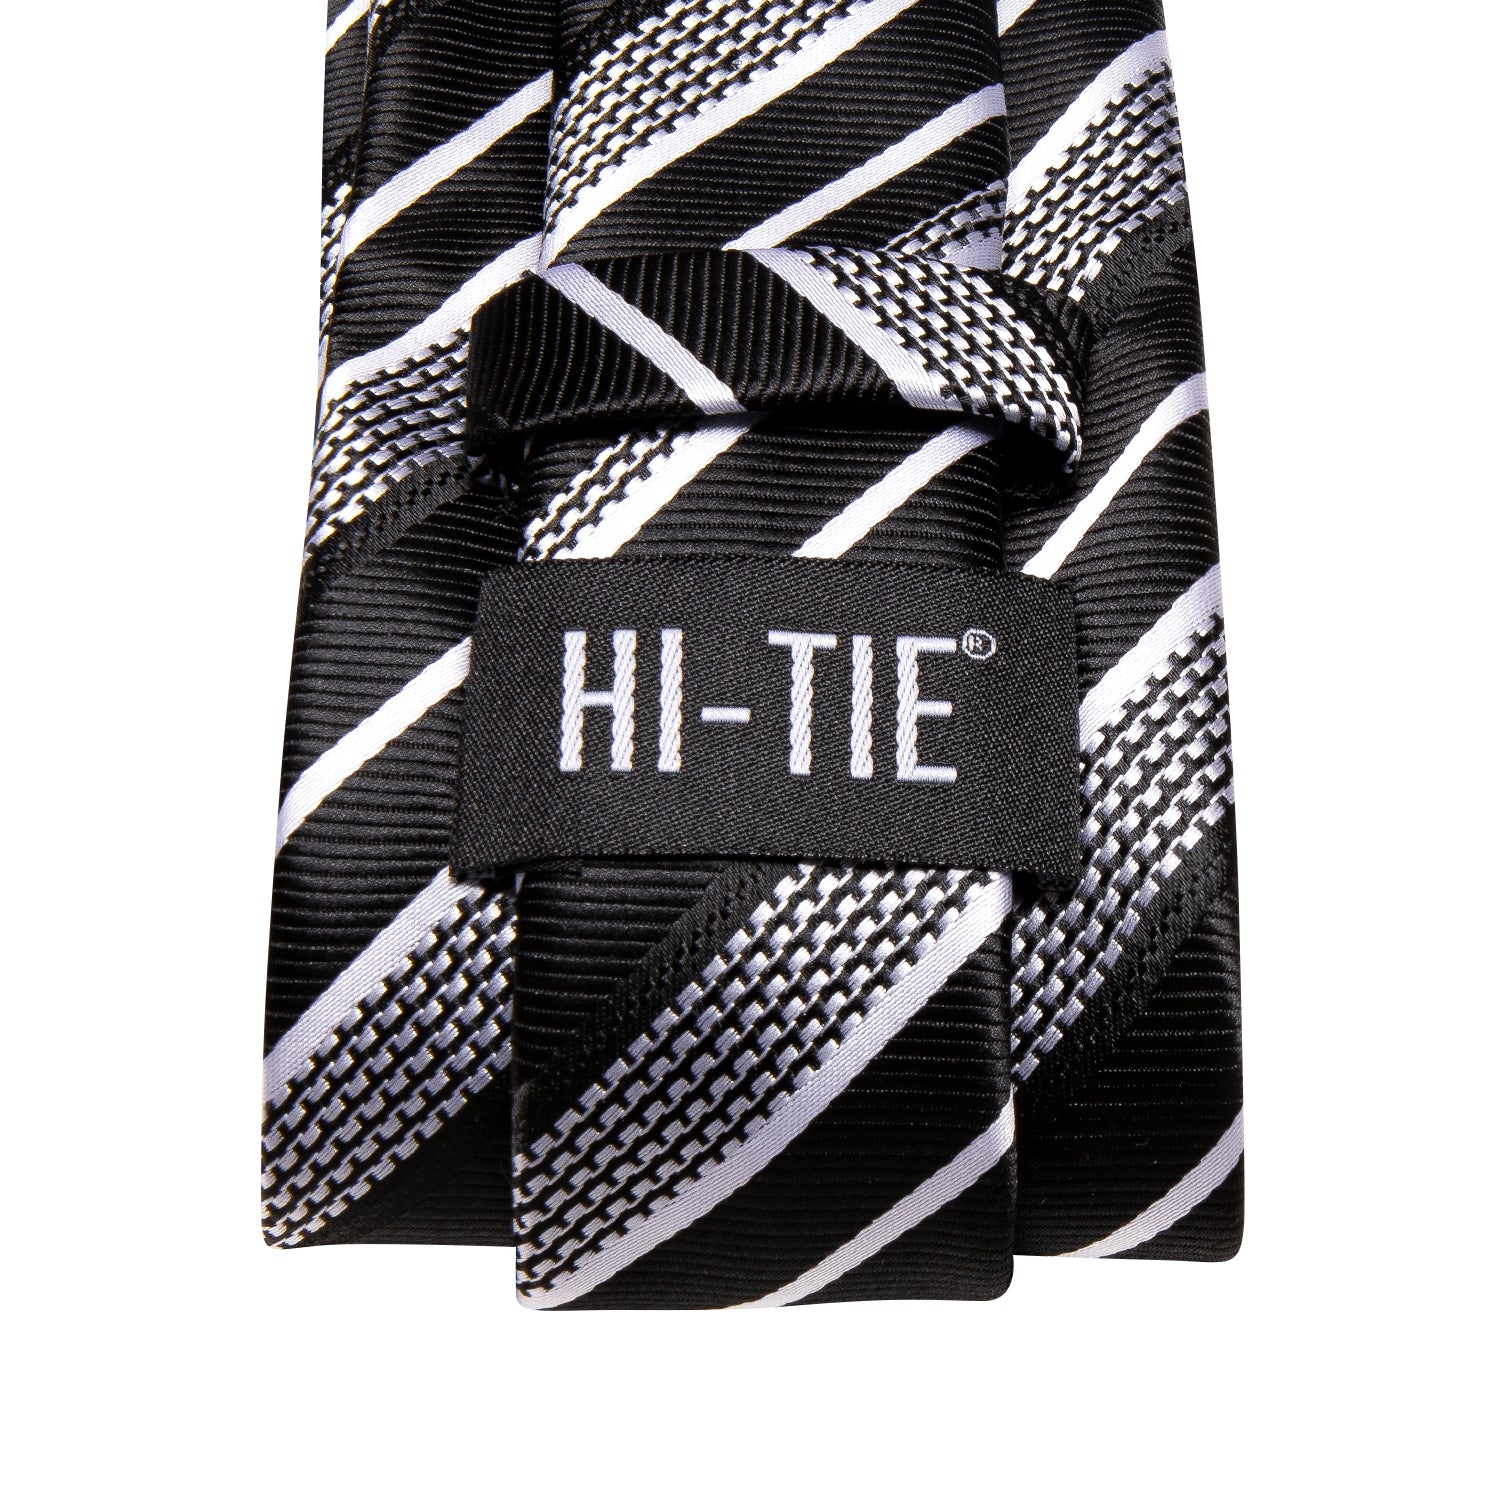 Black White Strip Necktie Pocket Square Cufflinks Set